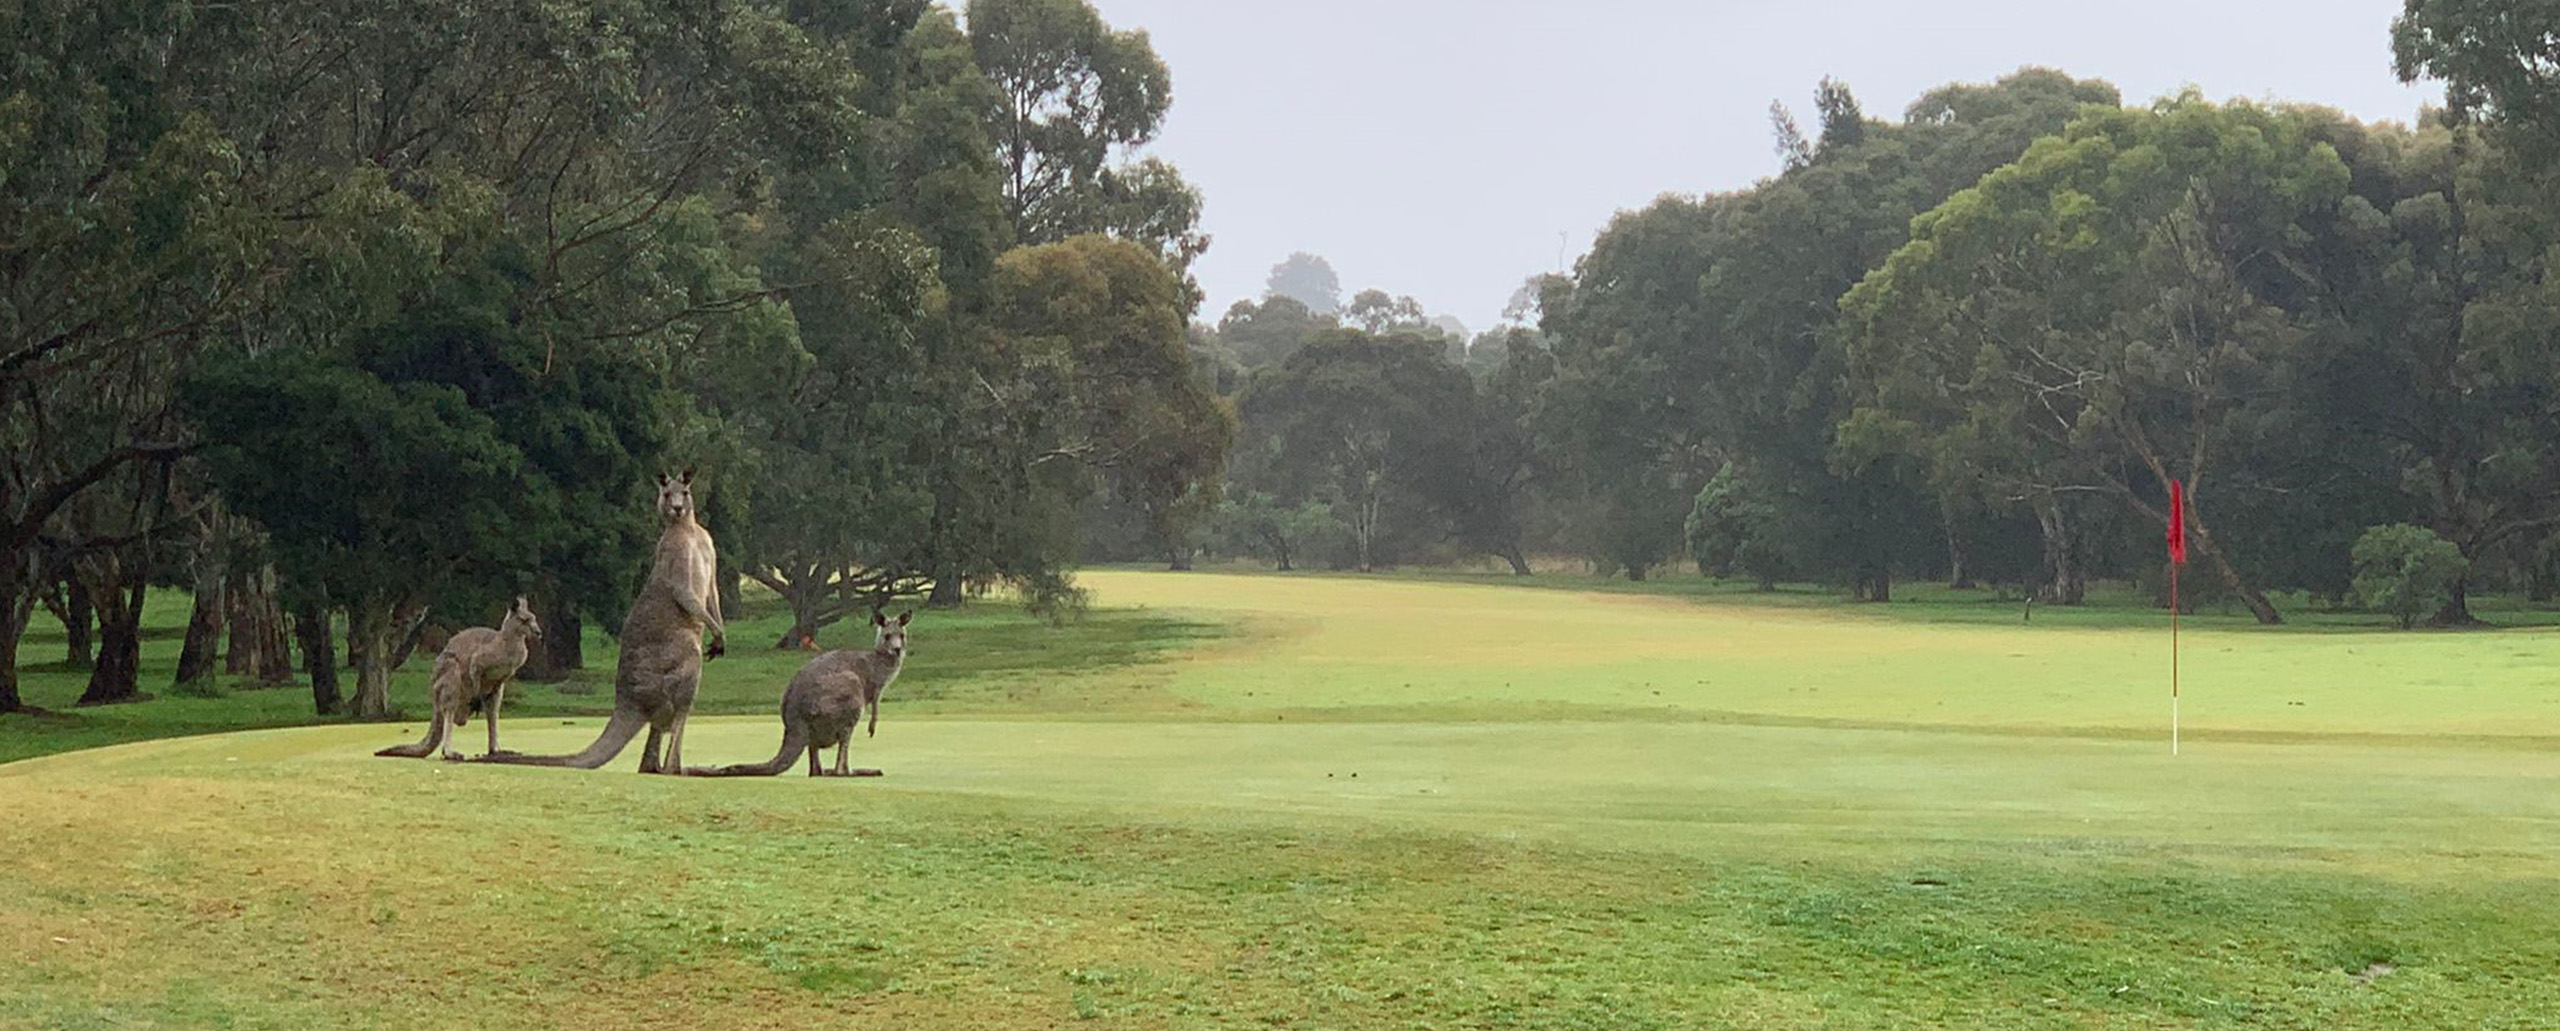 Bunsoora Park Public Golf Course_kangaroos